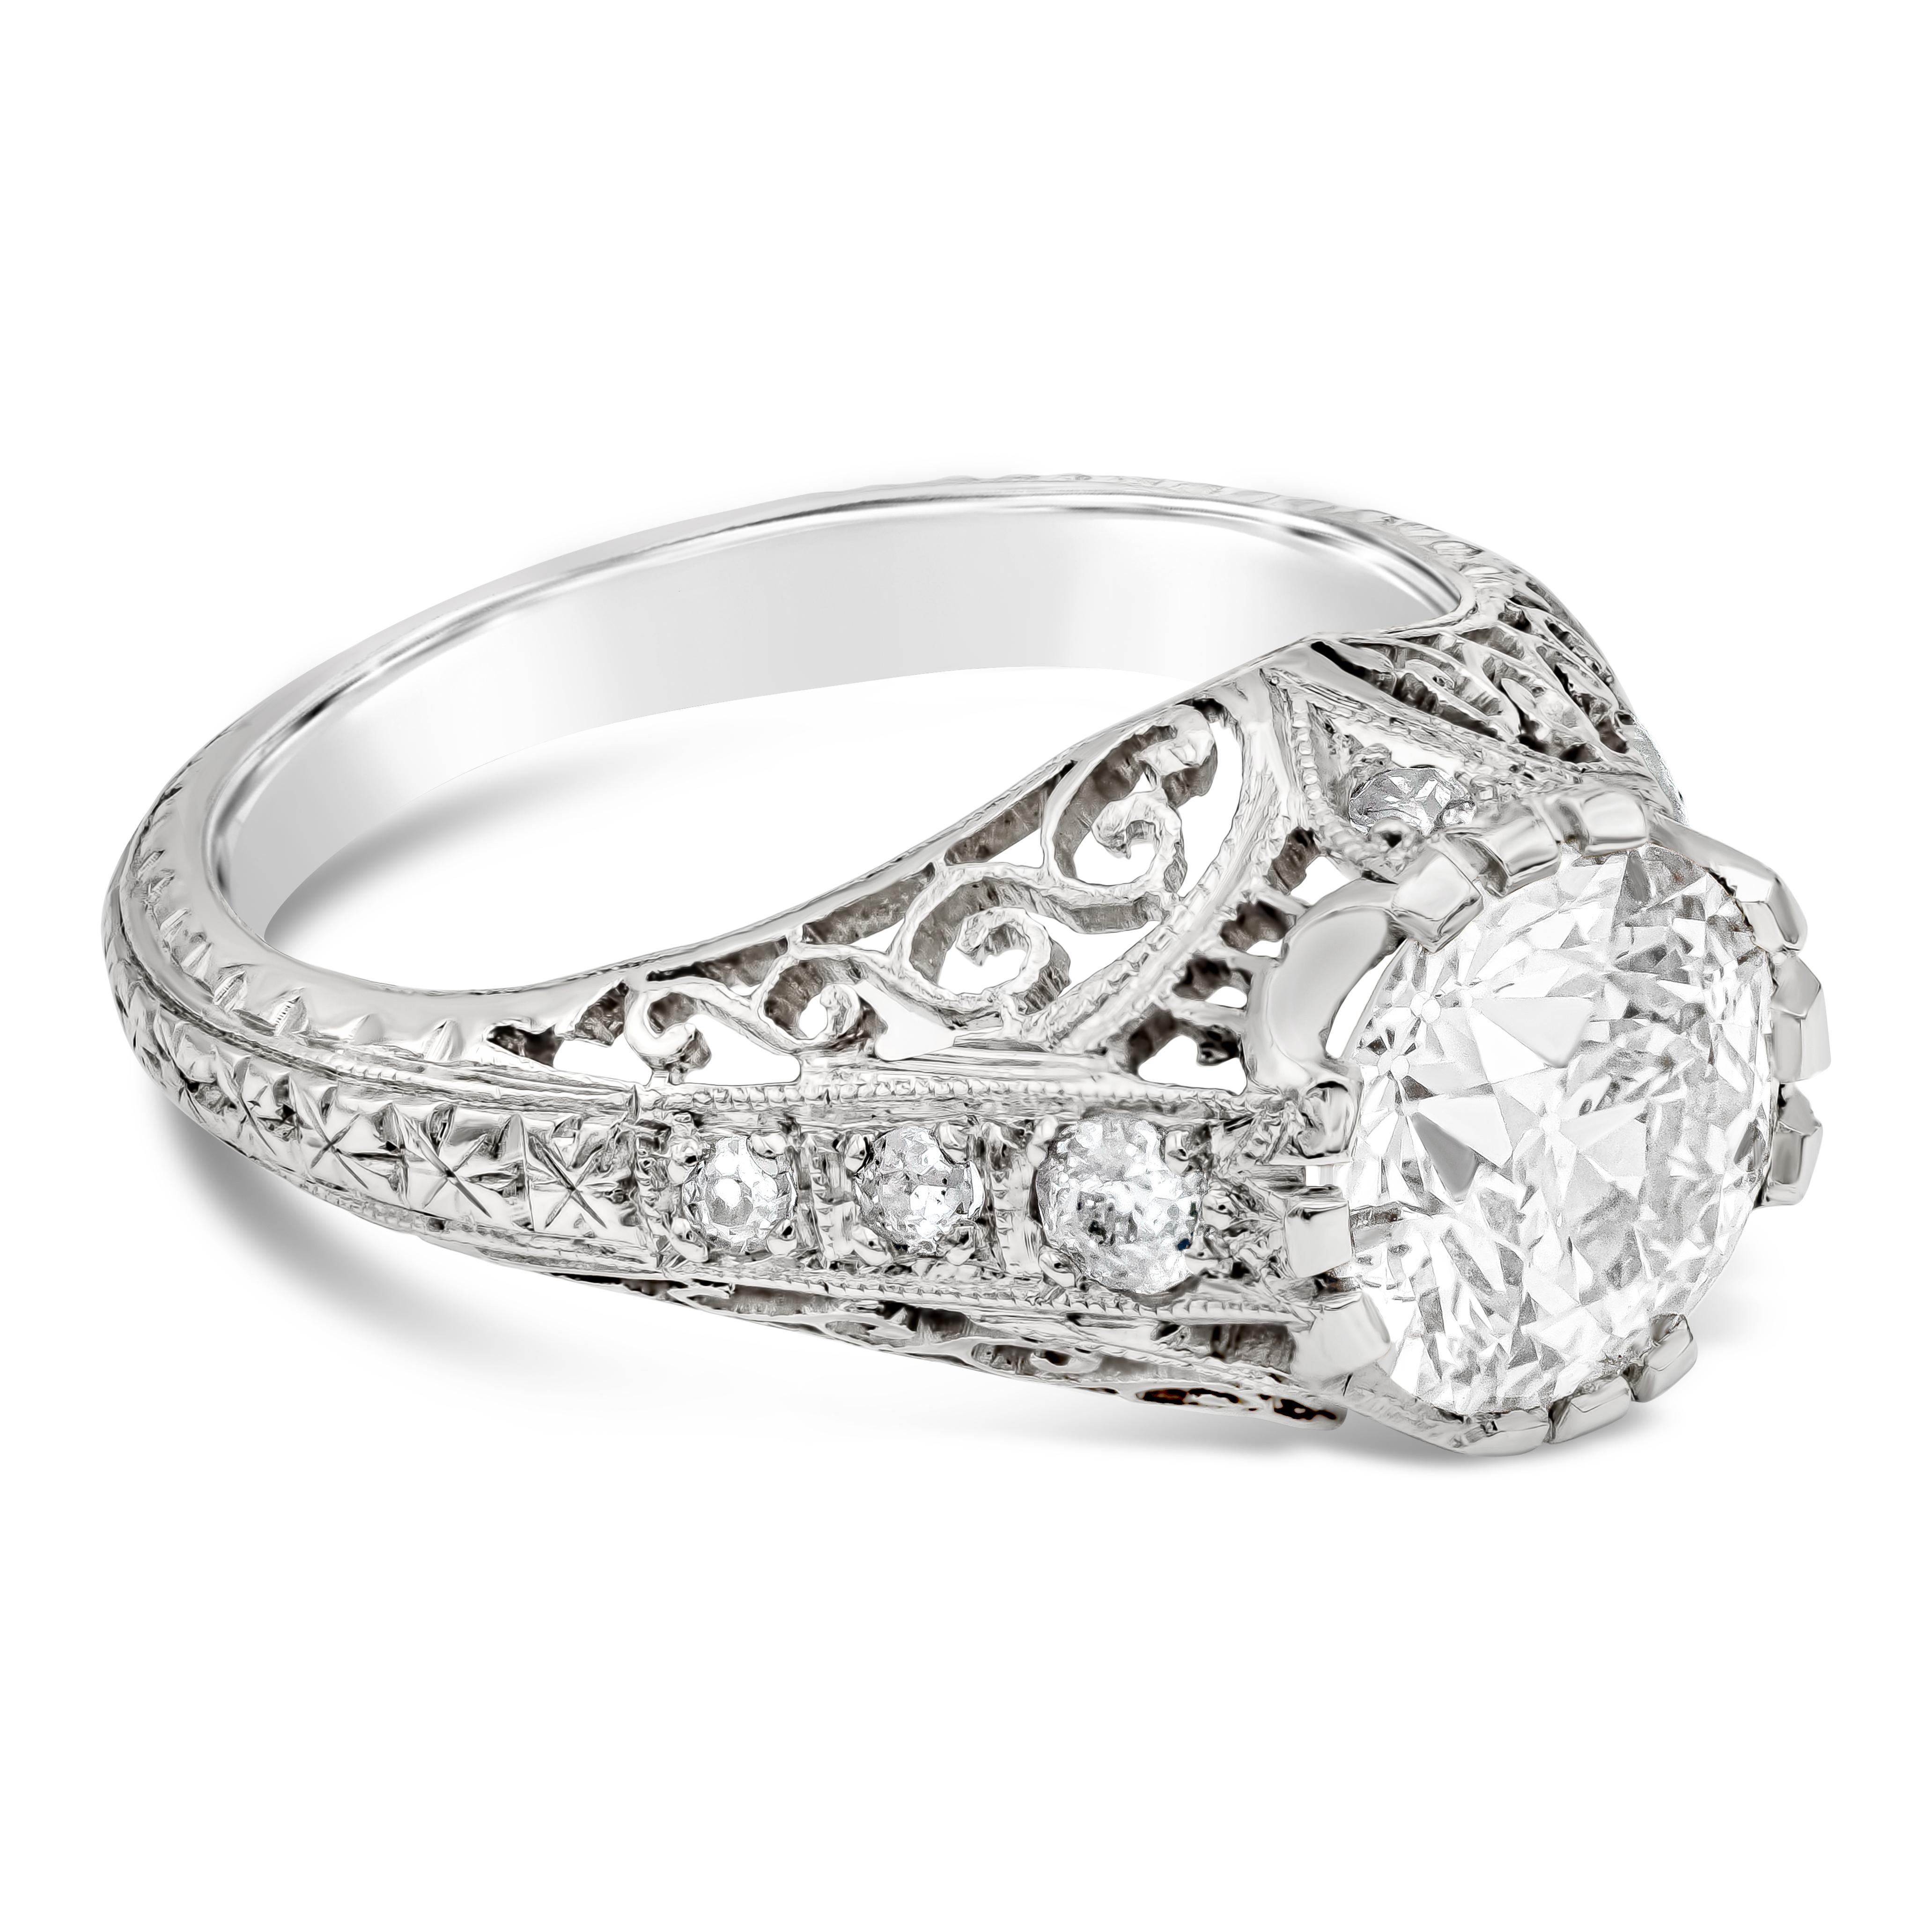 Dieser wunderschöne Ring stammt aus der Zeit des Art Déco und präsentiert einen 1,61 Karat schweren Diamanten im Old European Cut. Ein kompliziertes Design, das mit alter Handwerkskunst und Techniken hergestellt wird. Akzentuiert durch 4 Diamanten